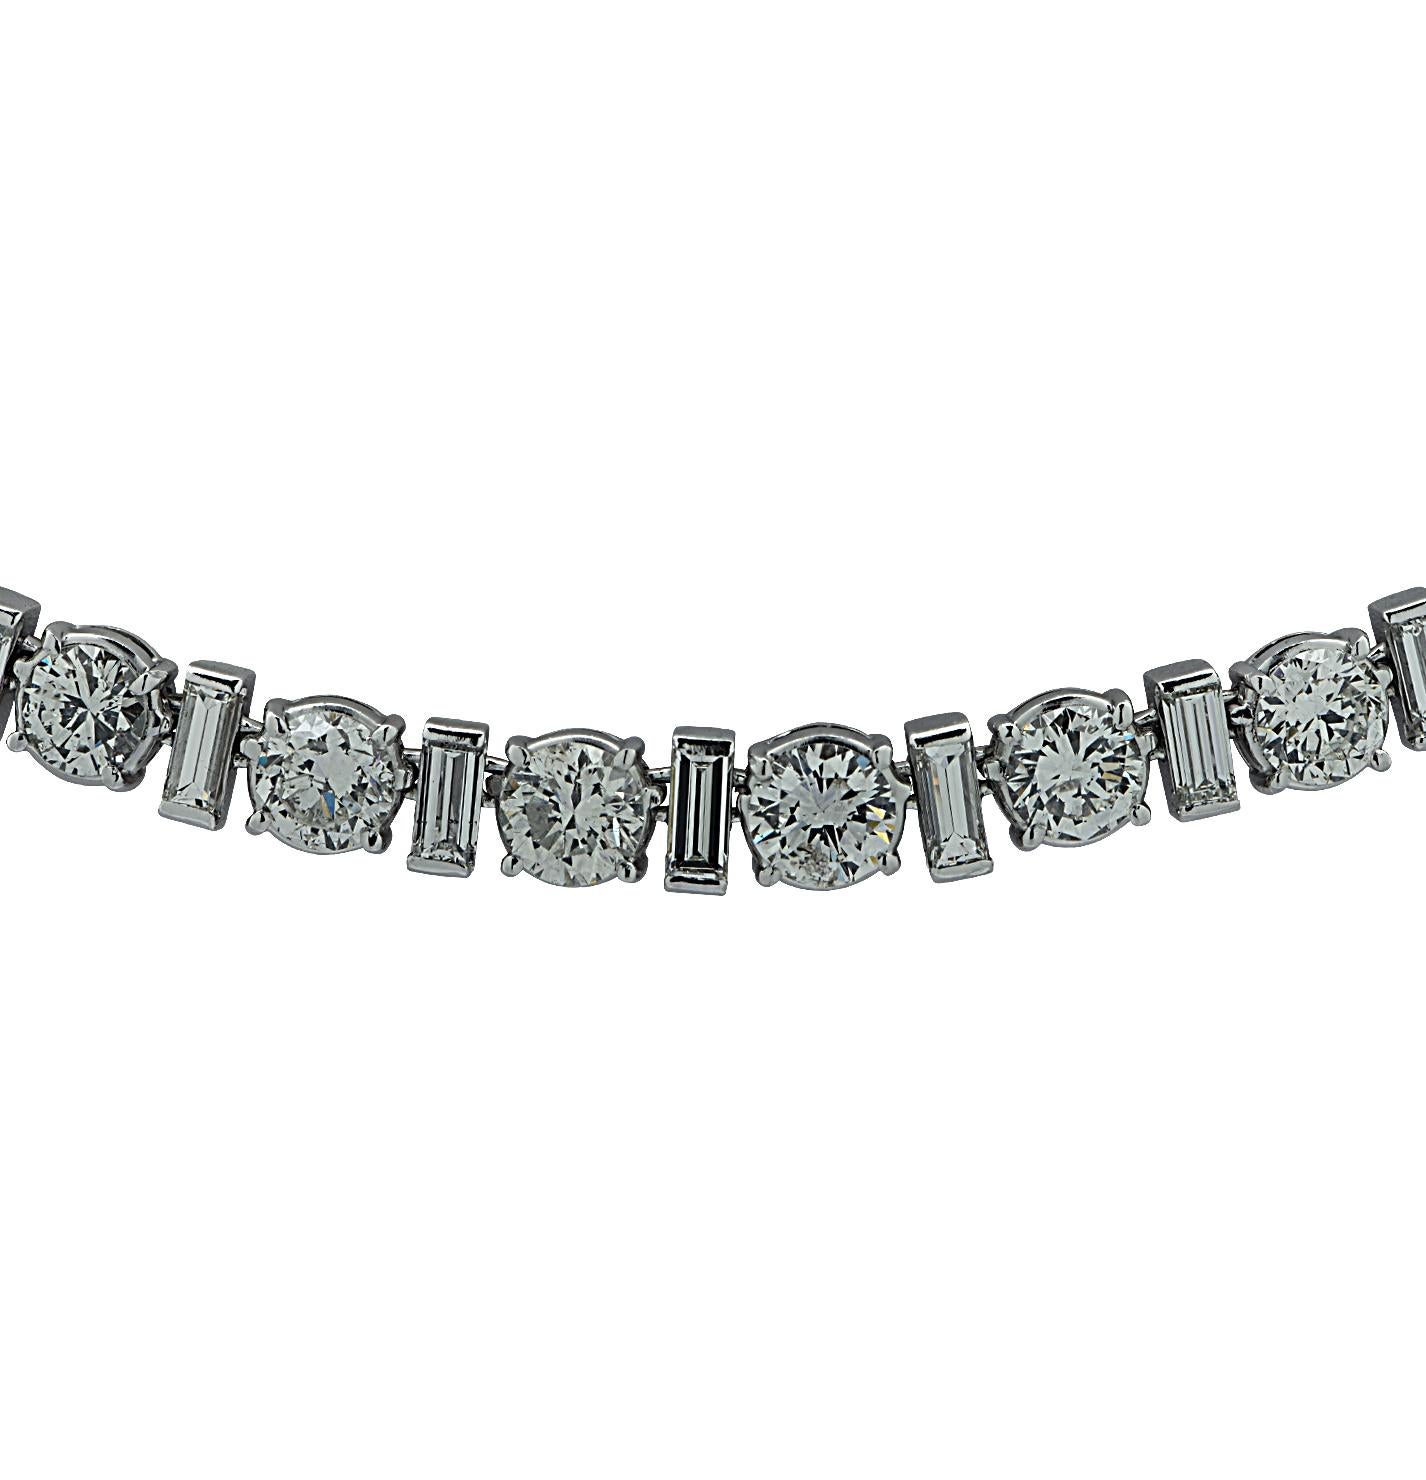 22 carat diamond necklace